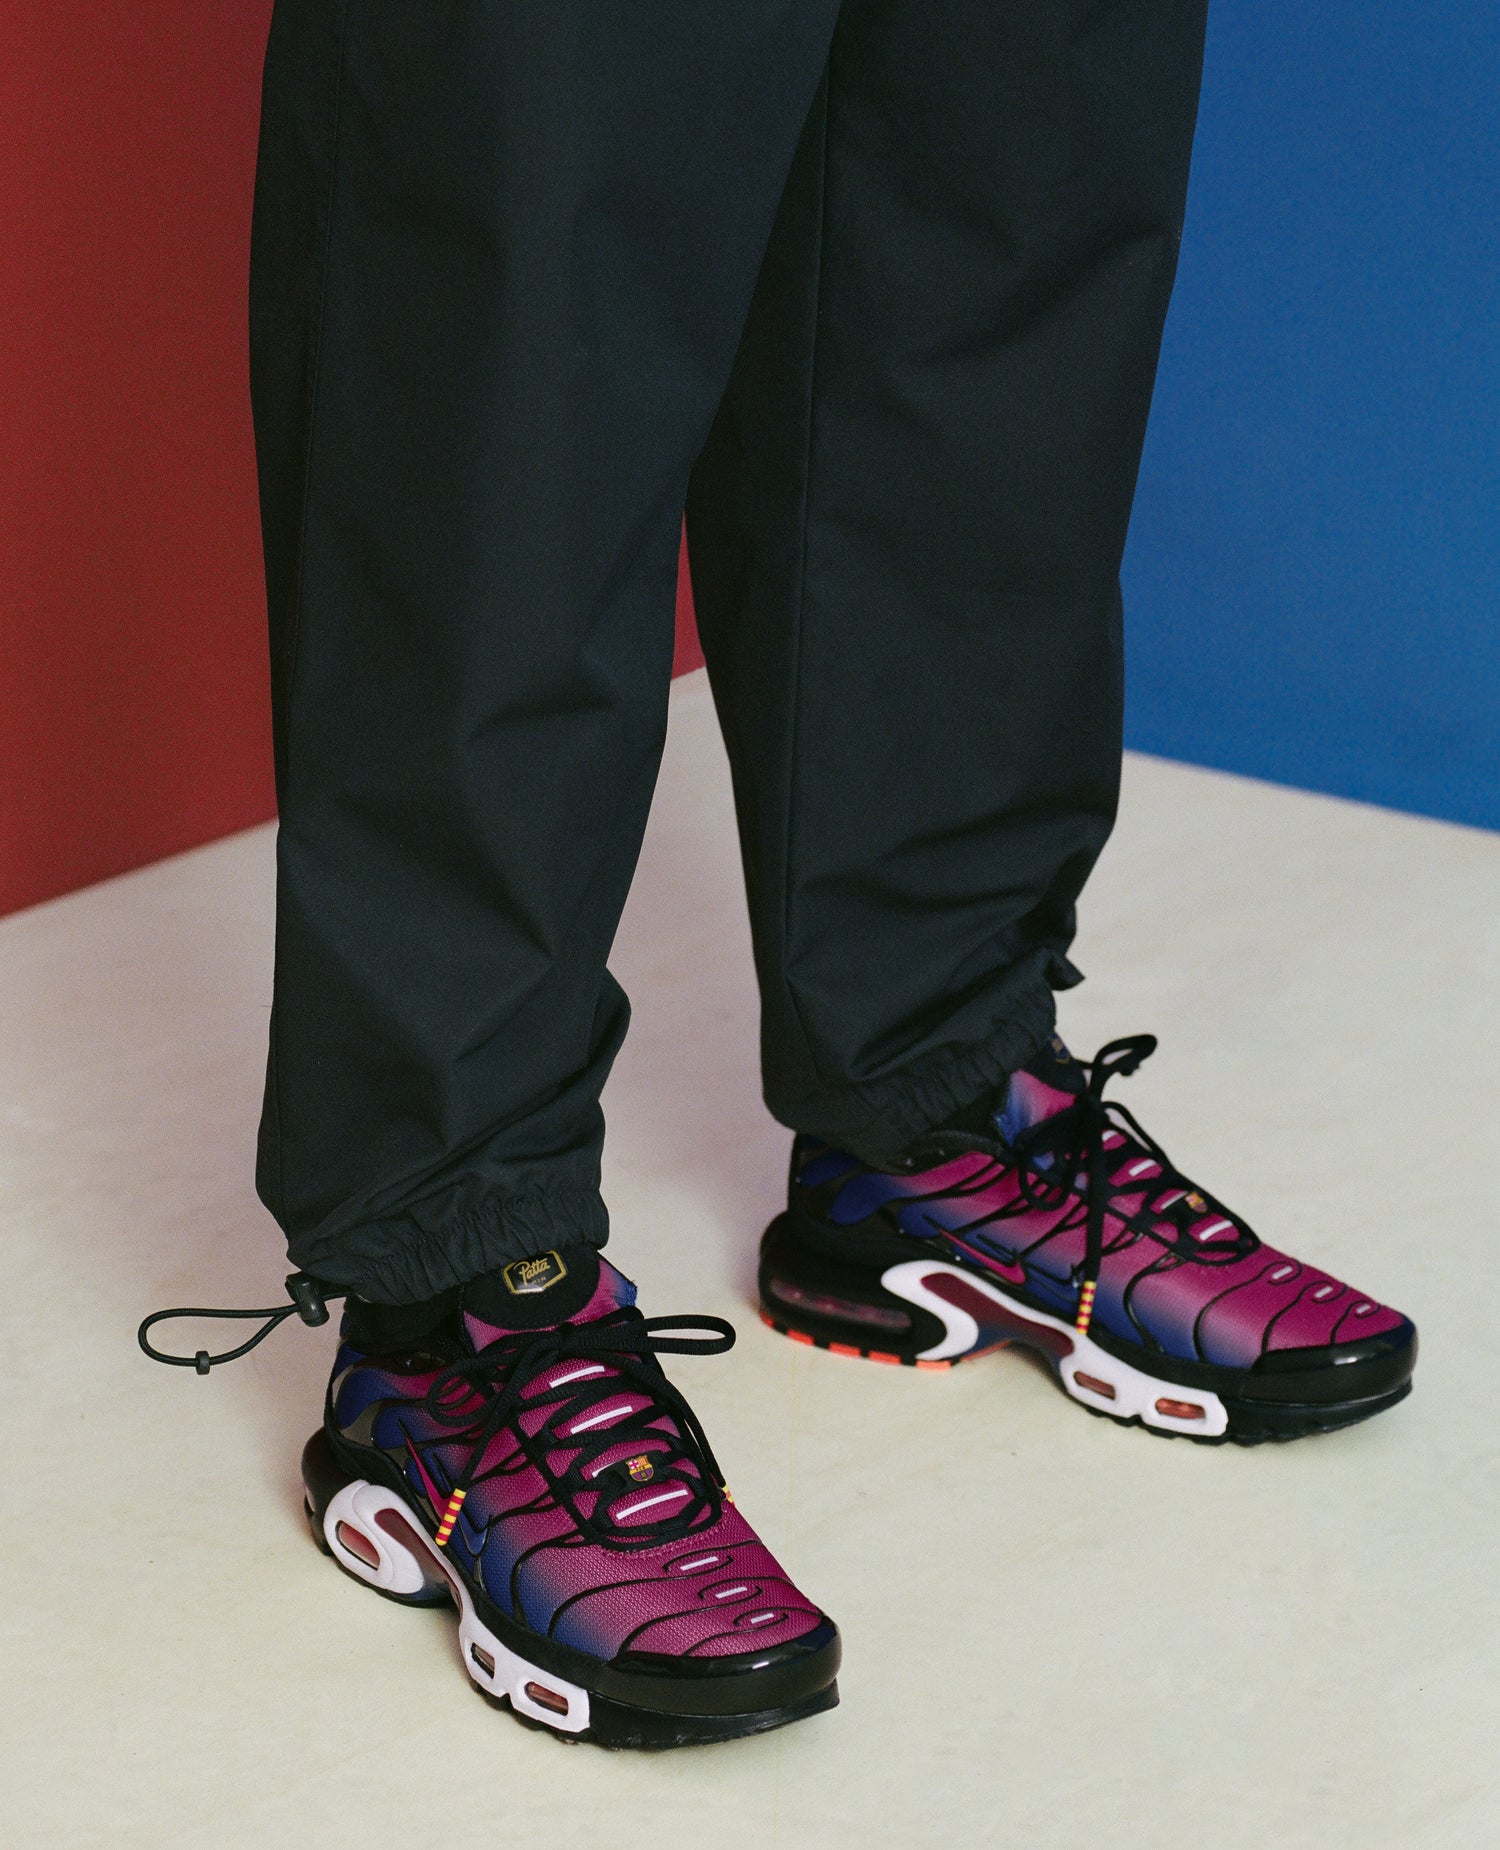 FCB x Patta Culers del Món Nike Air Max Plus (Nero/Rosso nobile-Blu reale profondo)